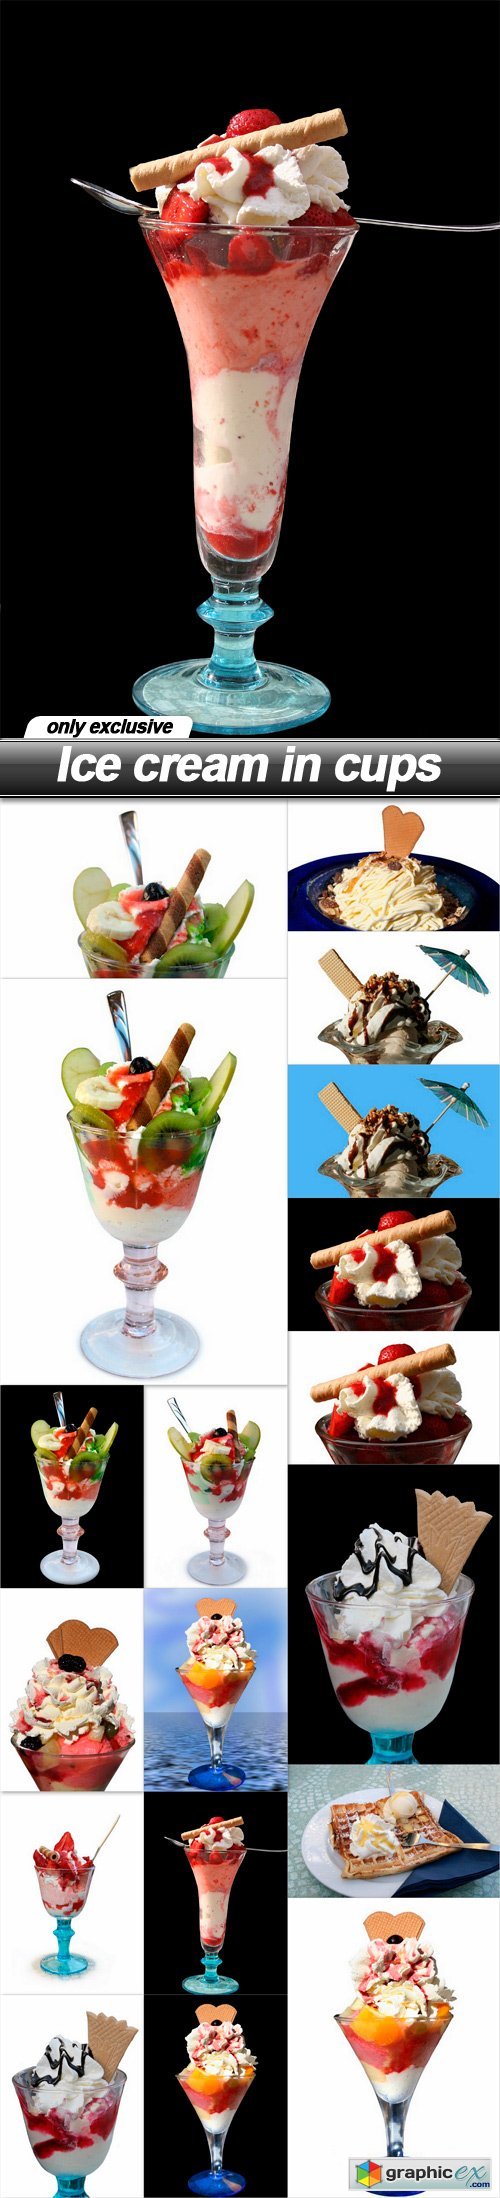 Ice cream in cups - 18 UHQ JPEG